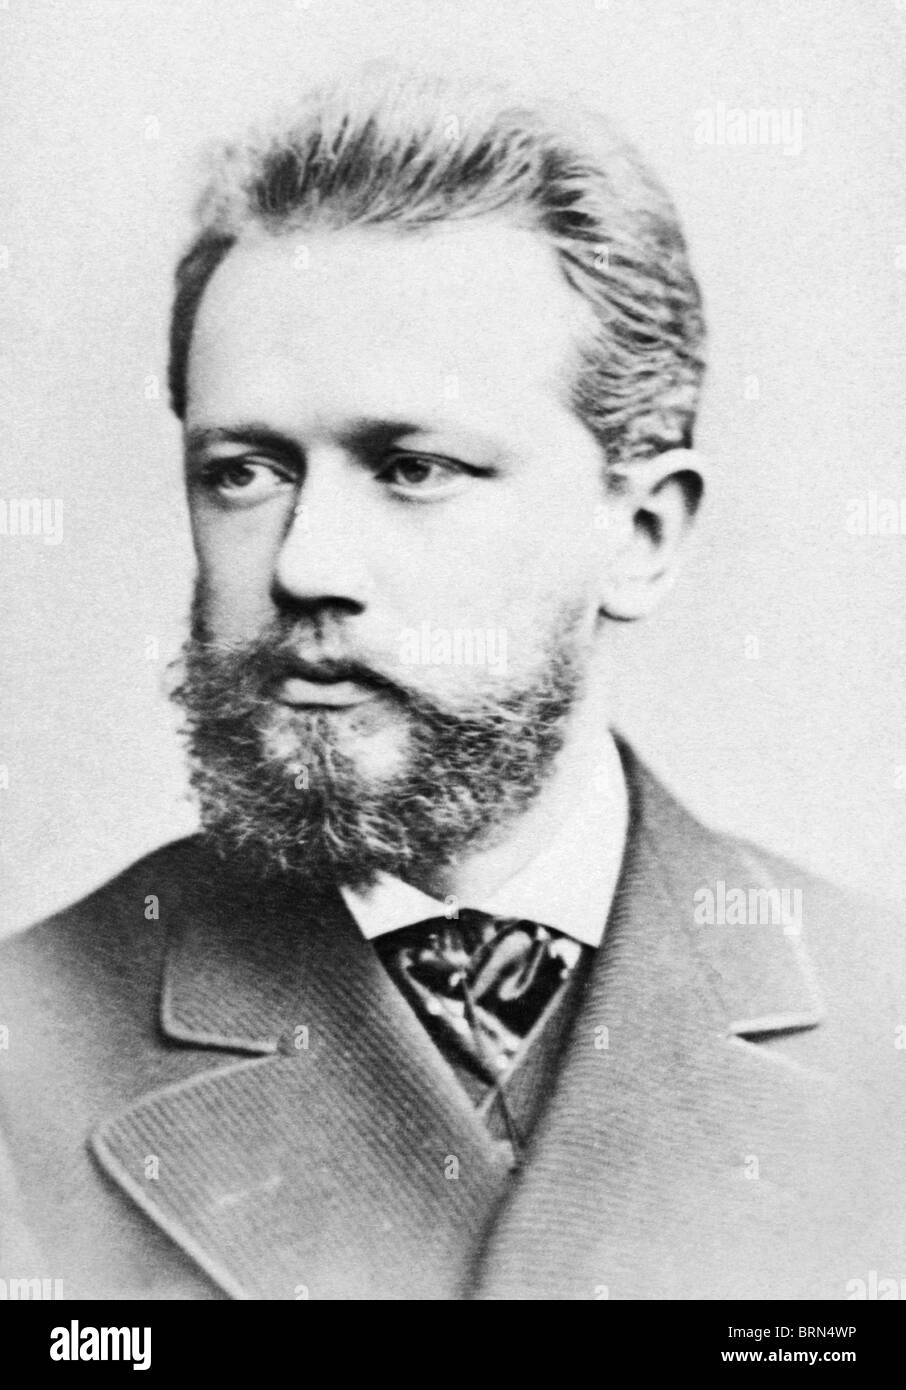 Foto ritratto circa 1870s del compositore russo Pyotr Ilyich Tchaikovsky (1840 - 1893). Foto Stock